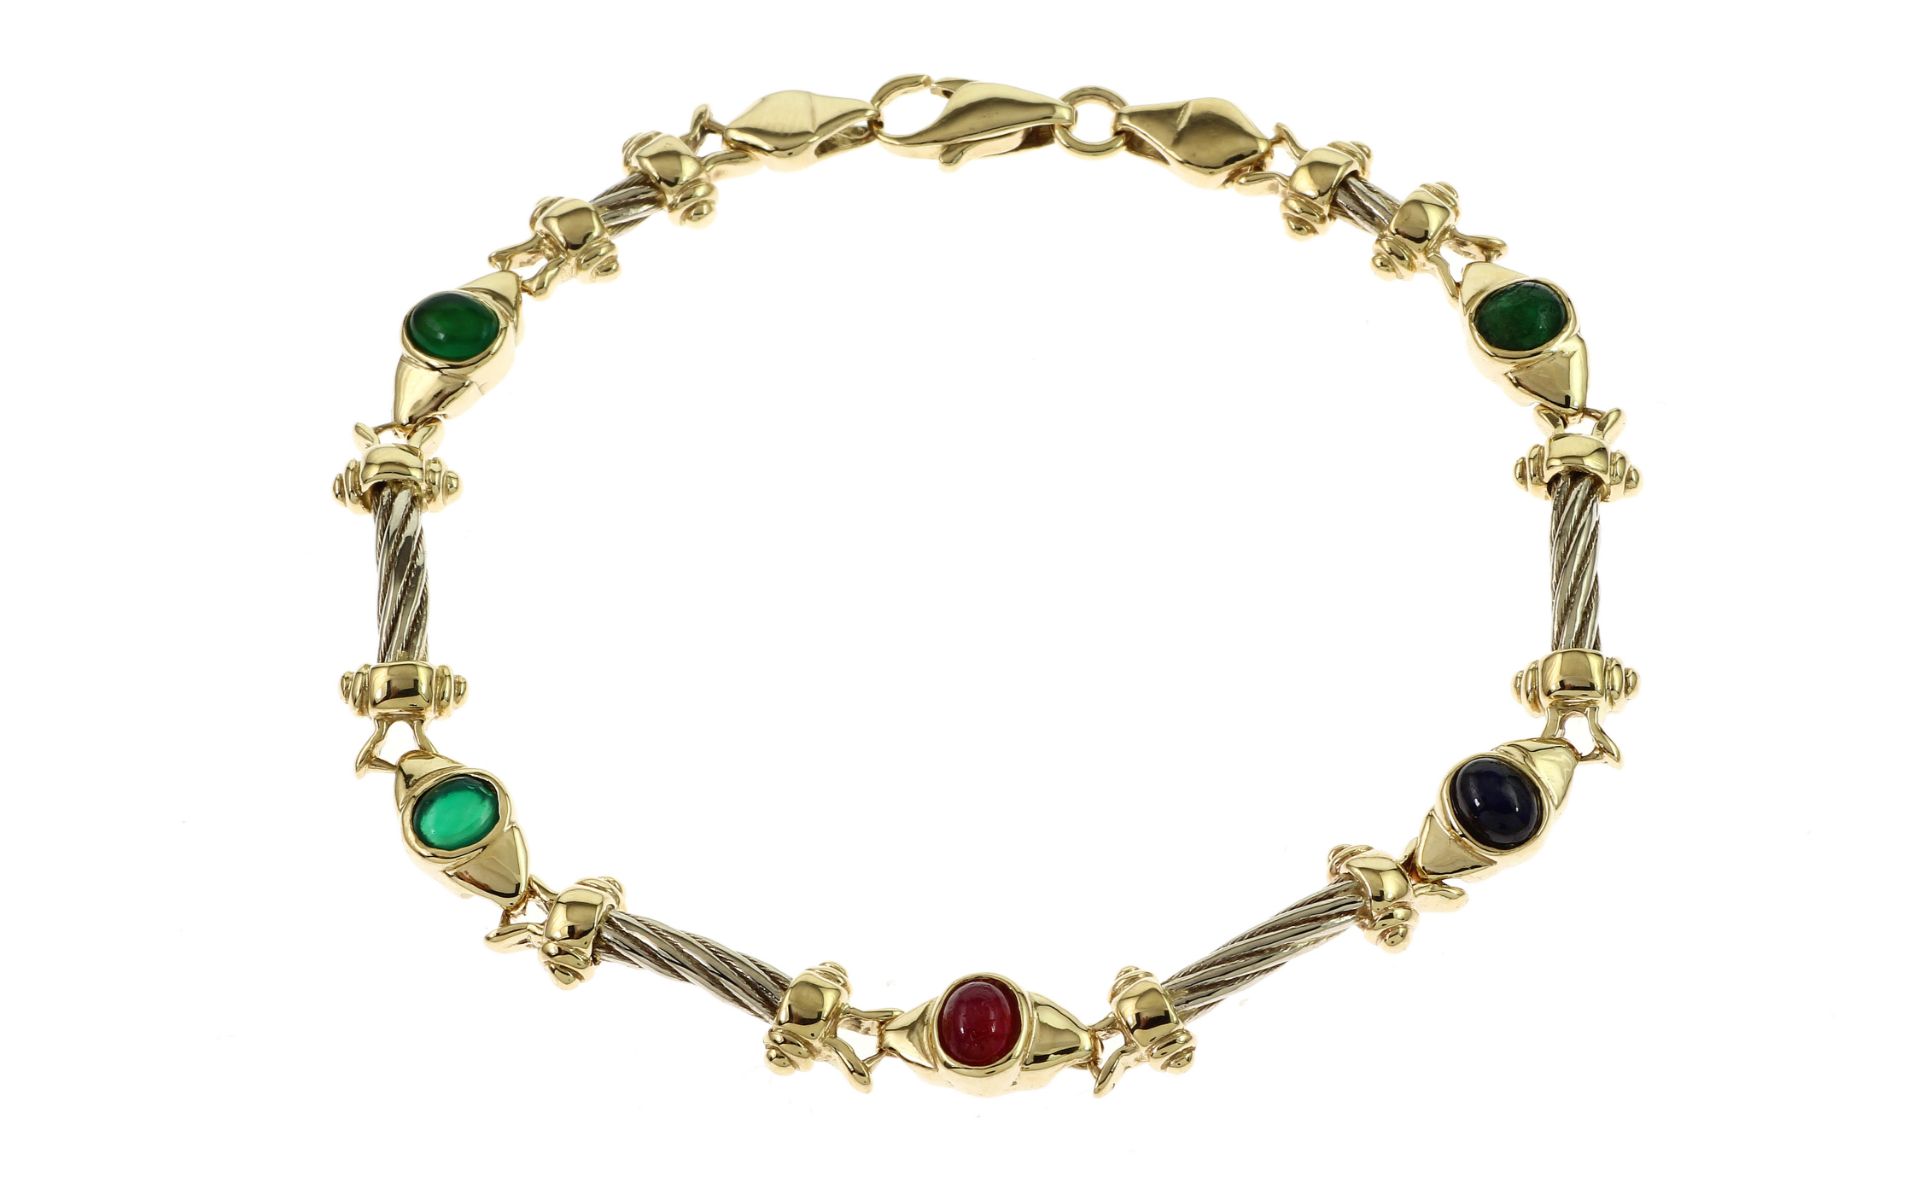 Armband 16.53g 585/- Gelbgold und Weissgold mit Smaragden. Rubin und Saphir. Laenge ca. 19 cm